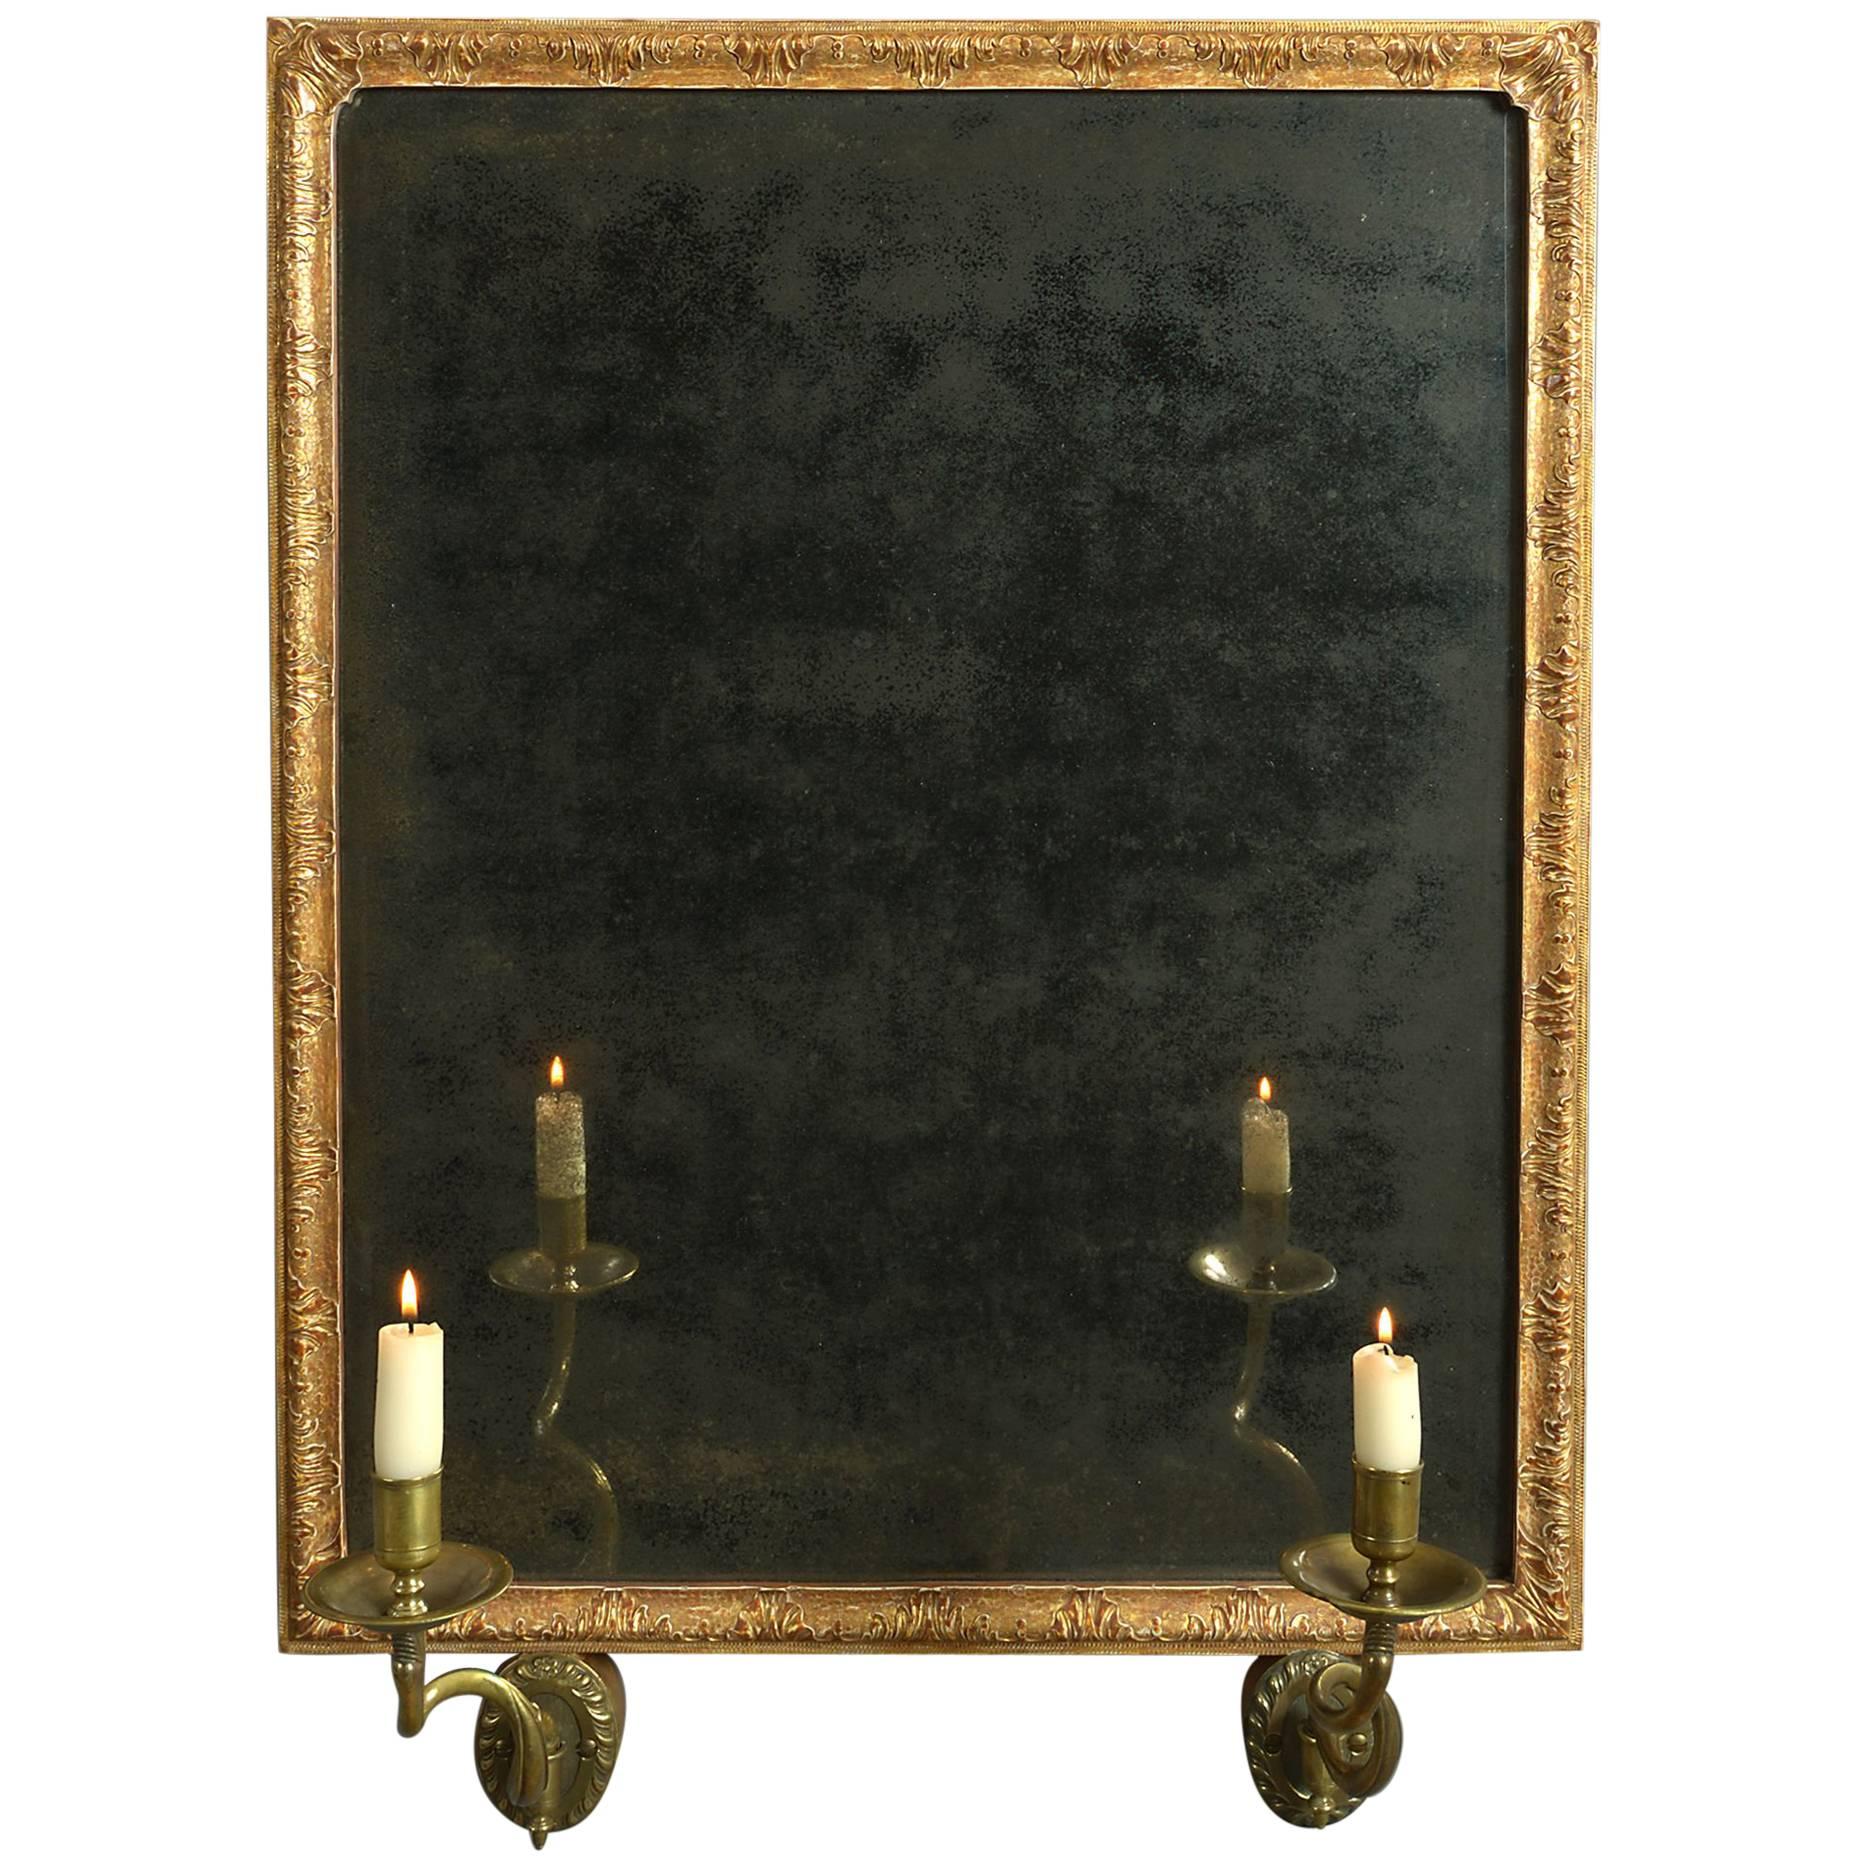 Early 18th Century George I Period Gile Gesso Girandole Mirror